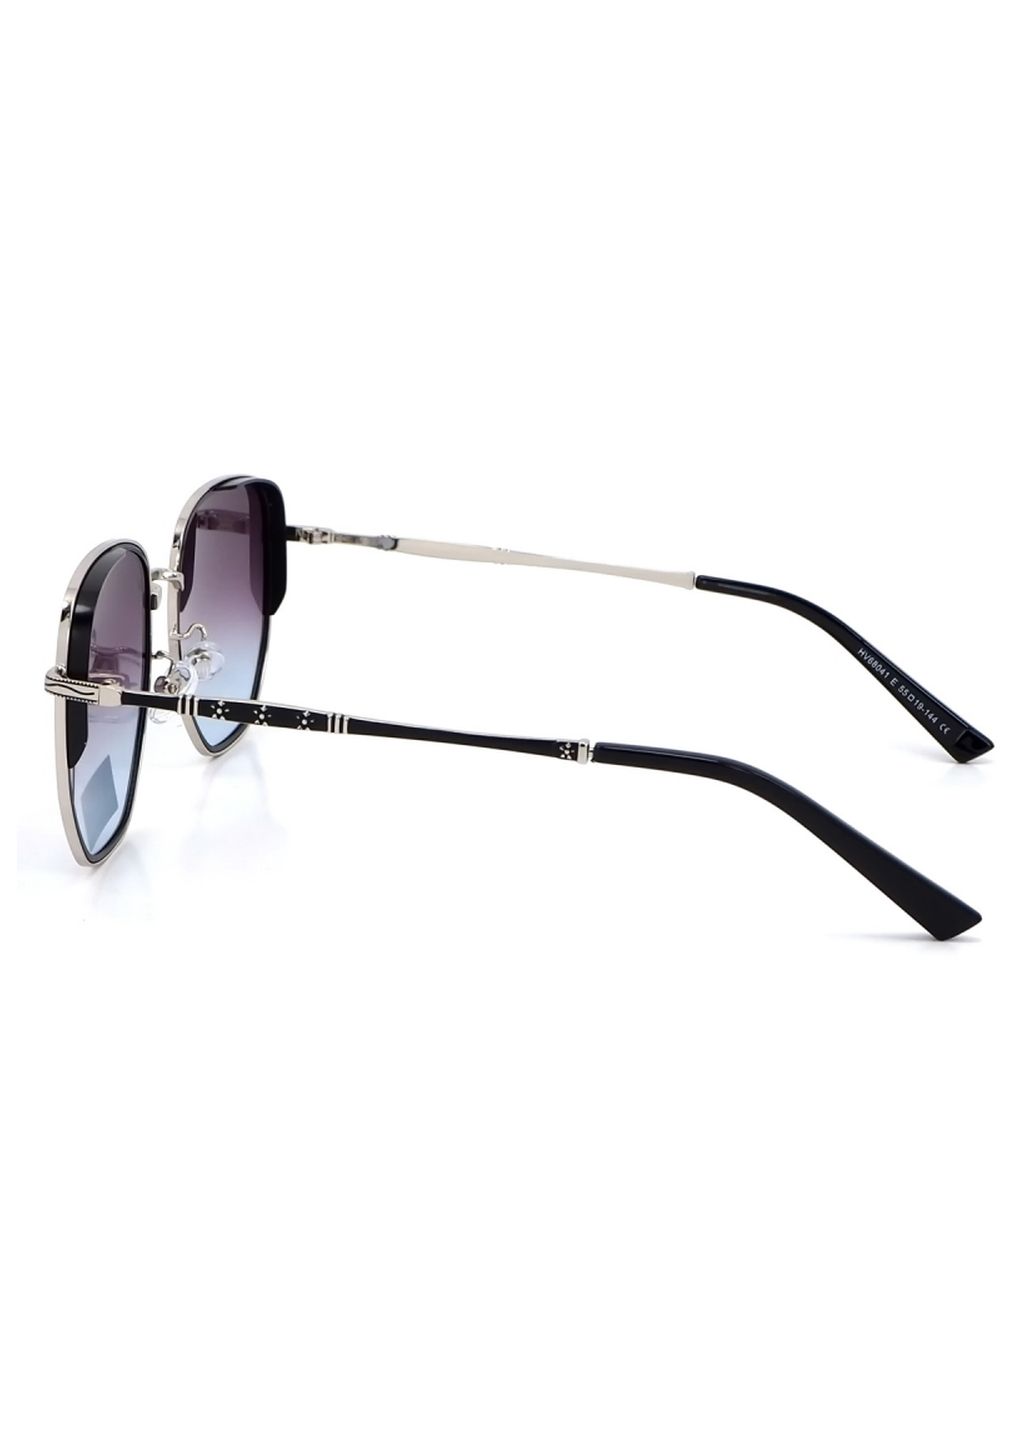 Купить Солнцезащитные очки c поляризацией HAVVS HV68041 170036 - Черный в интернет-магазине